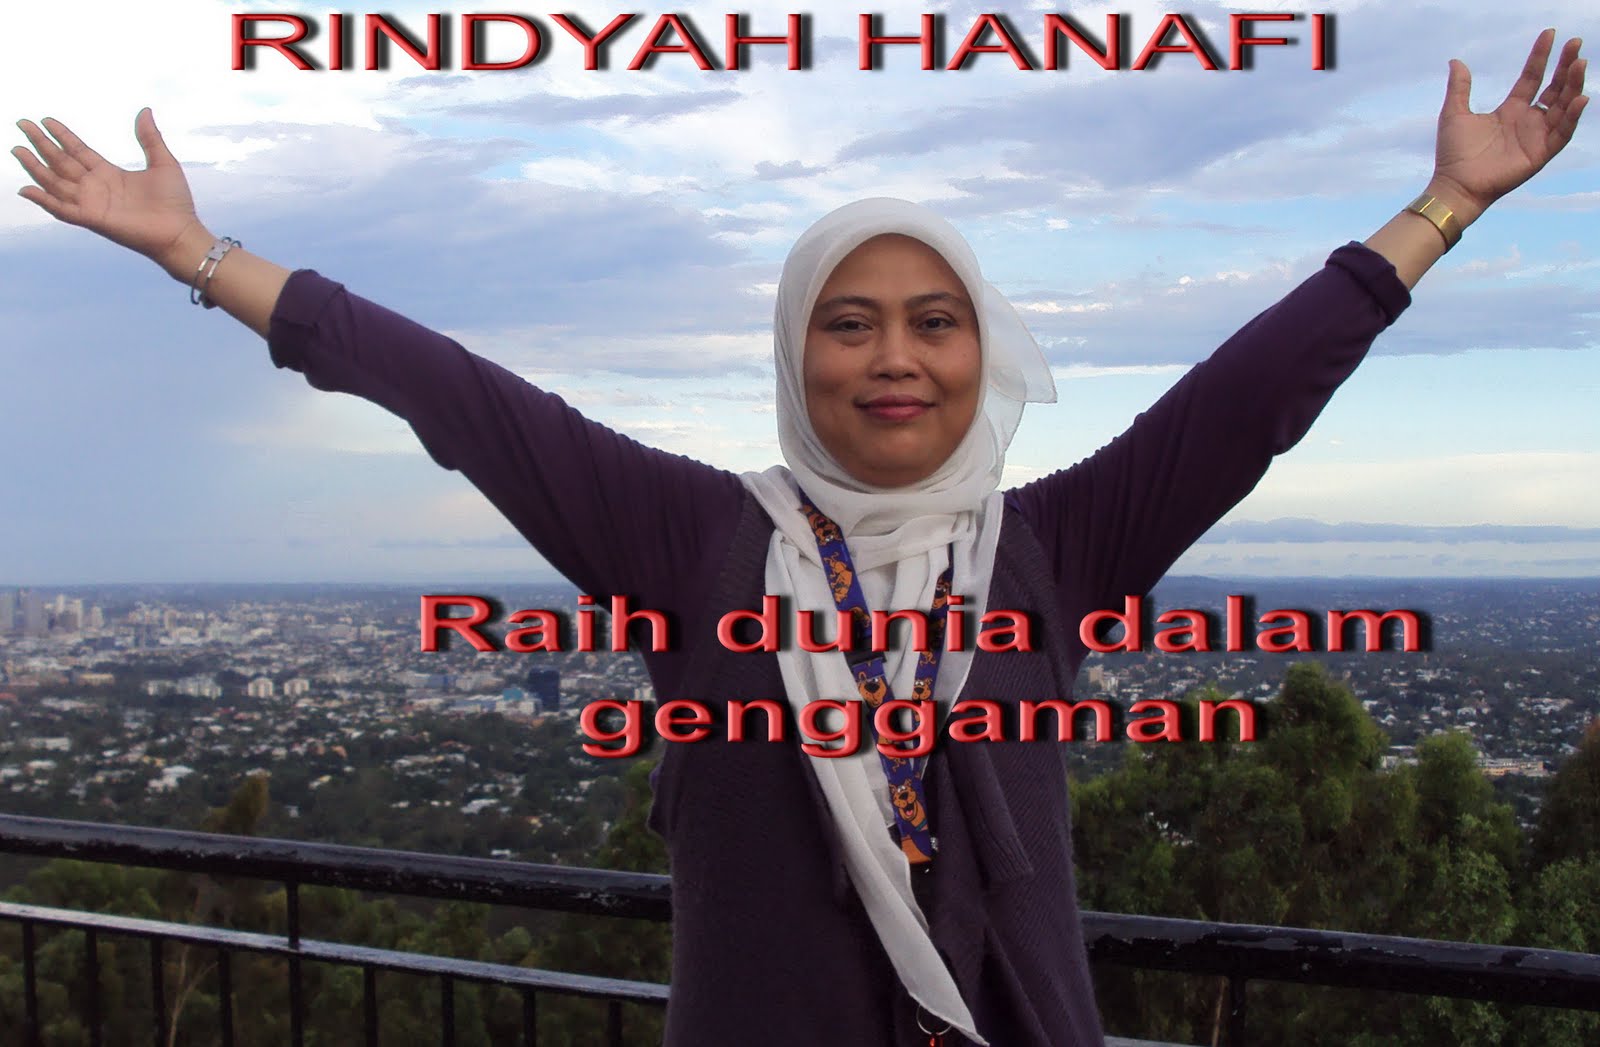 Rindyah Hanafi